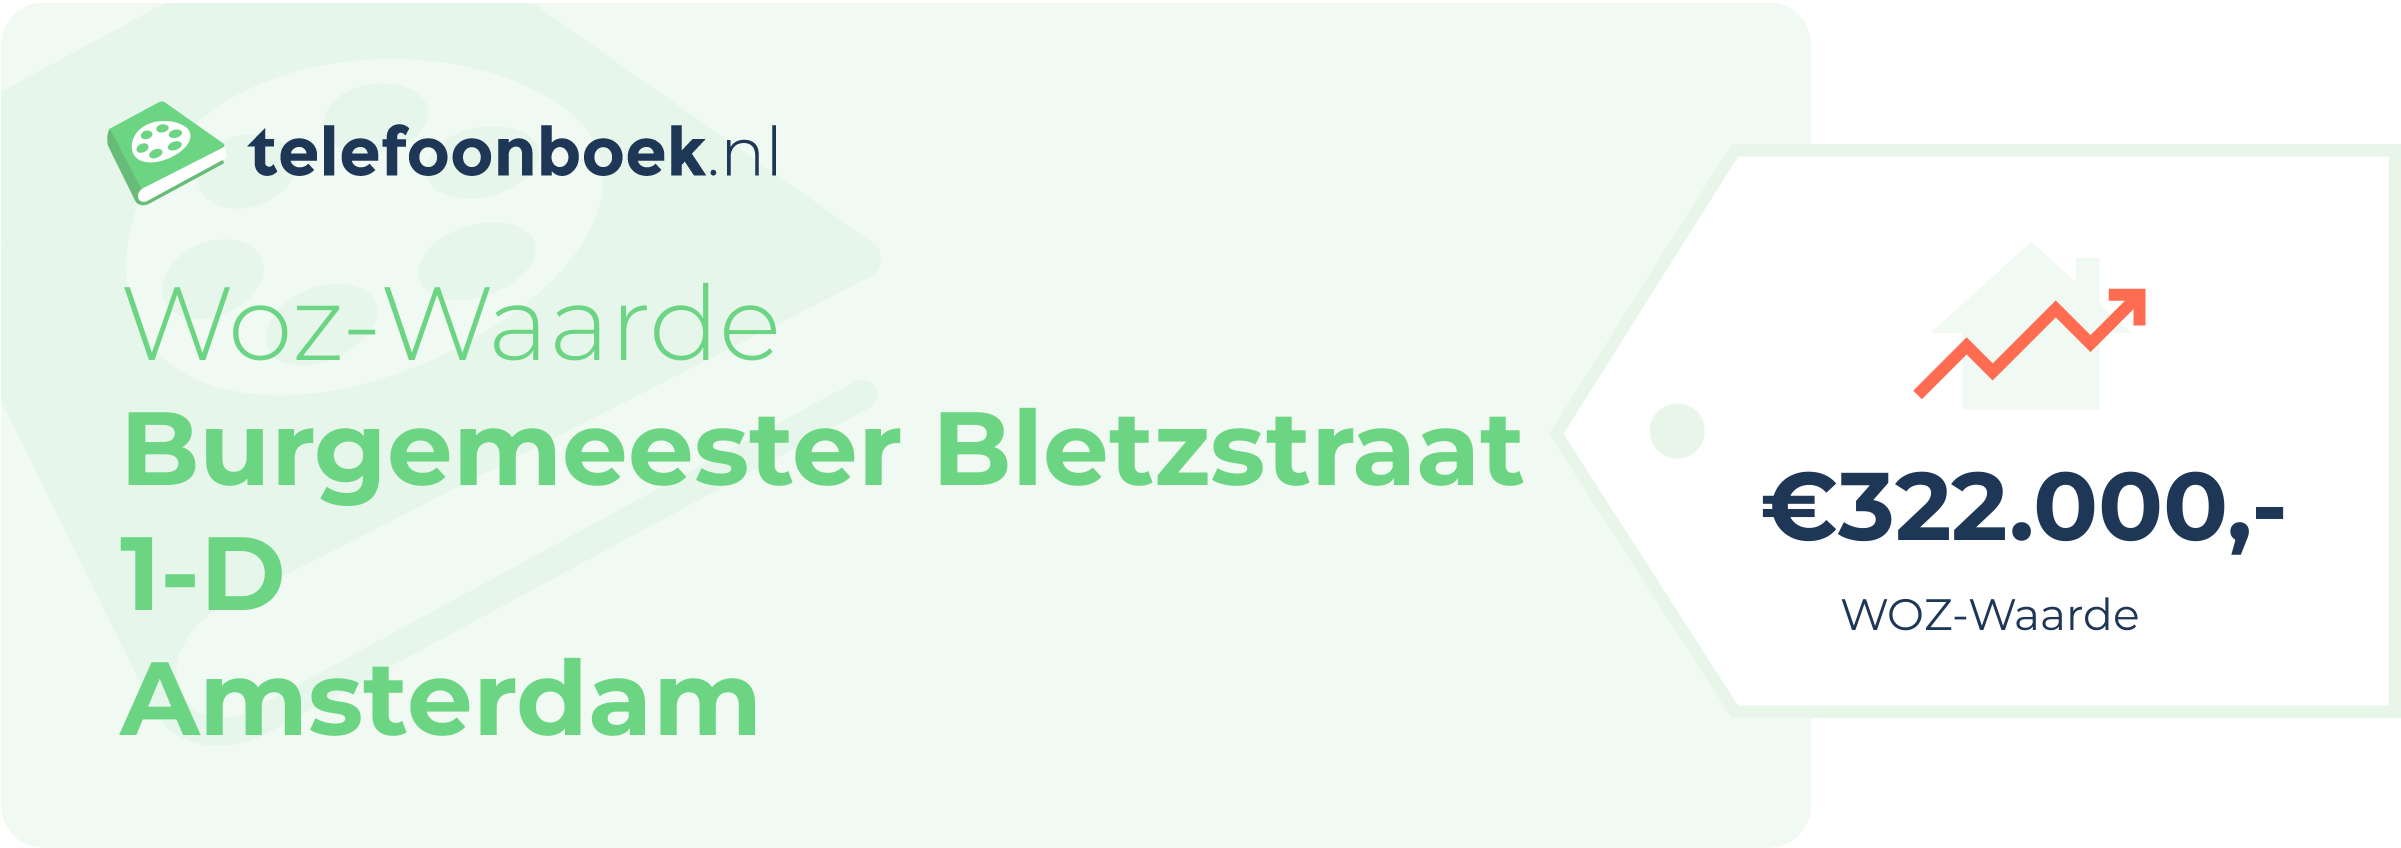 WOZ-waarde Burgemeester Bletzstraat 1-D Amsterdam